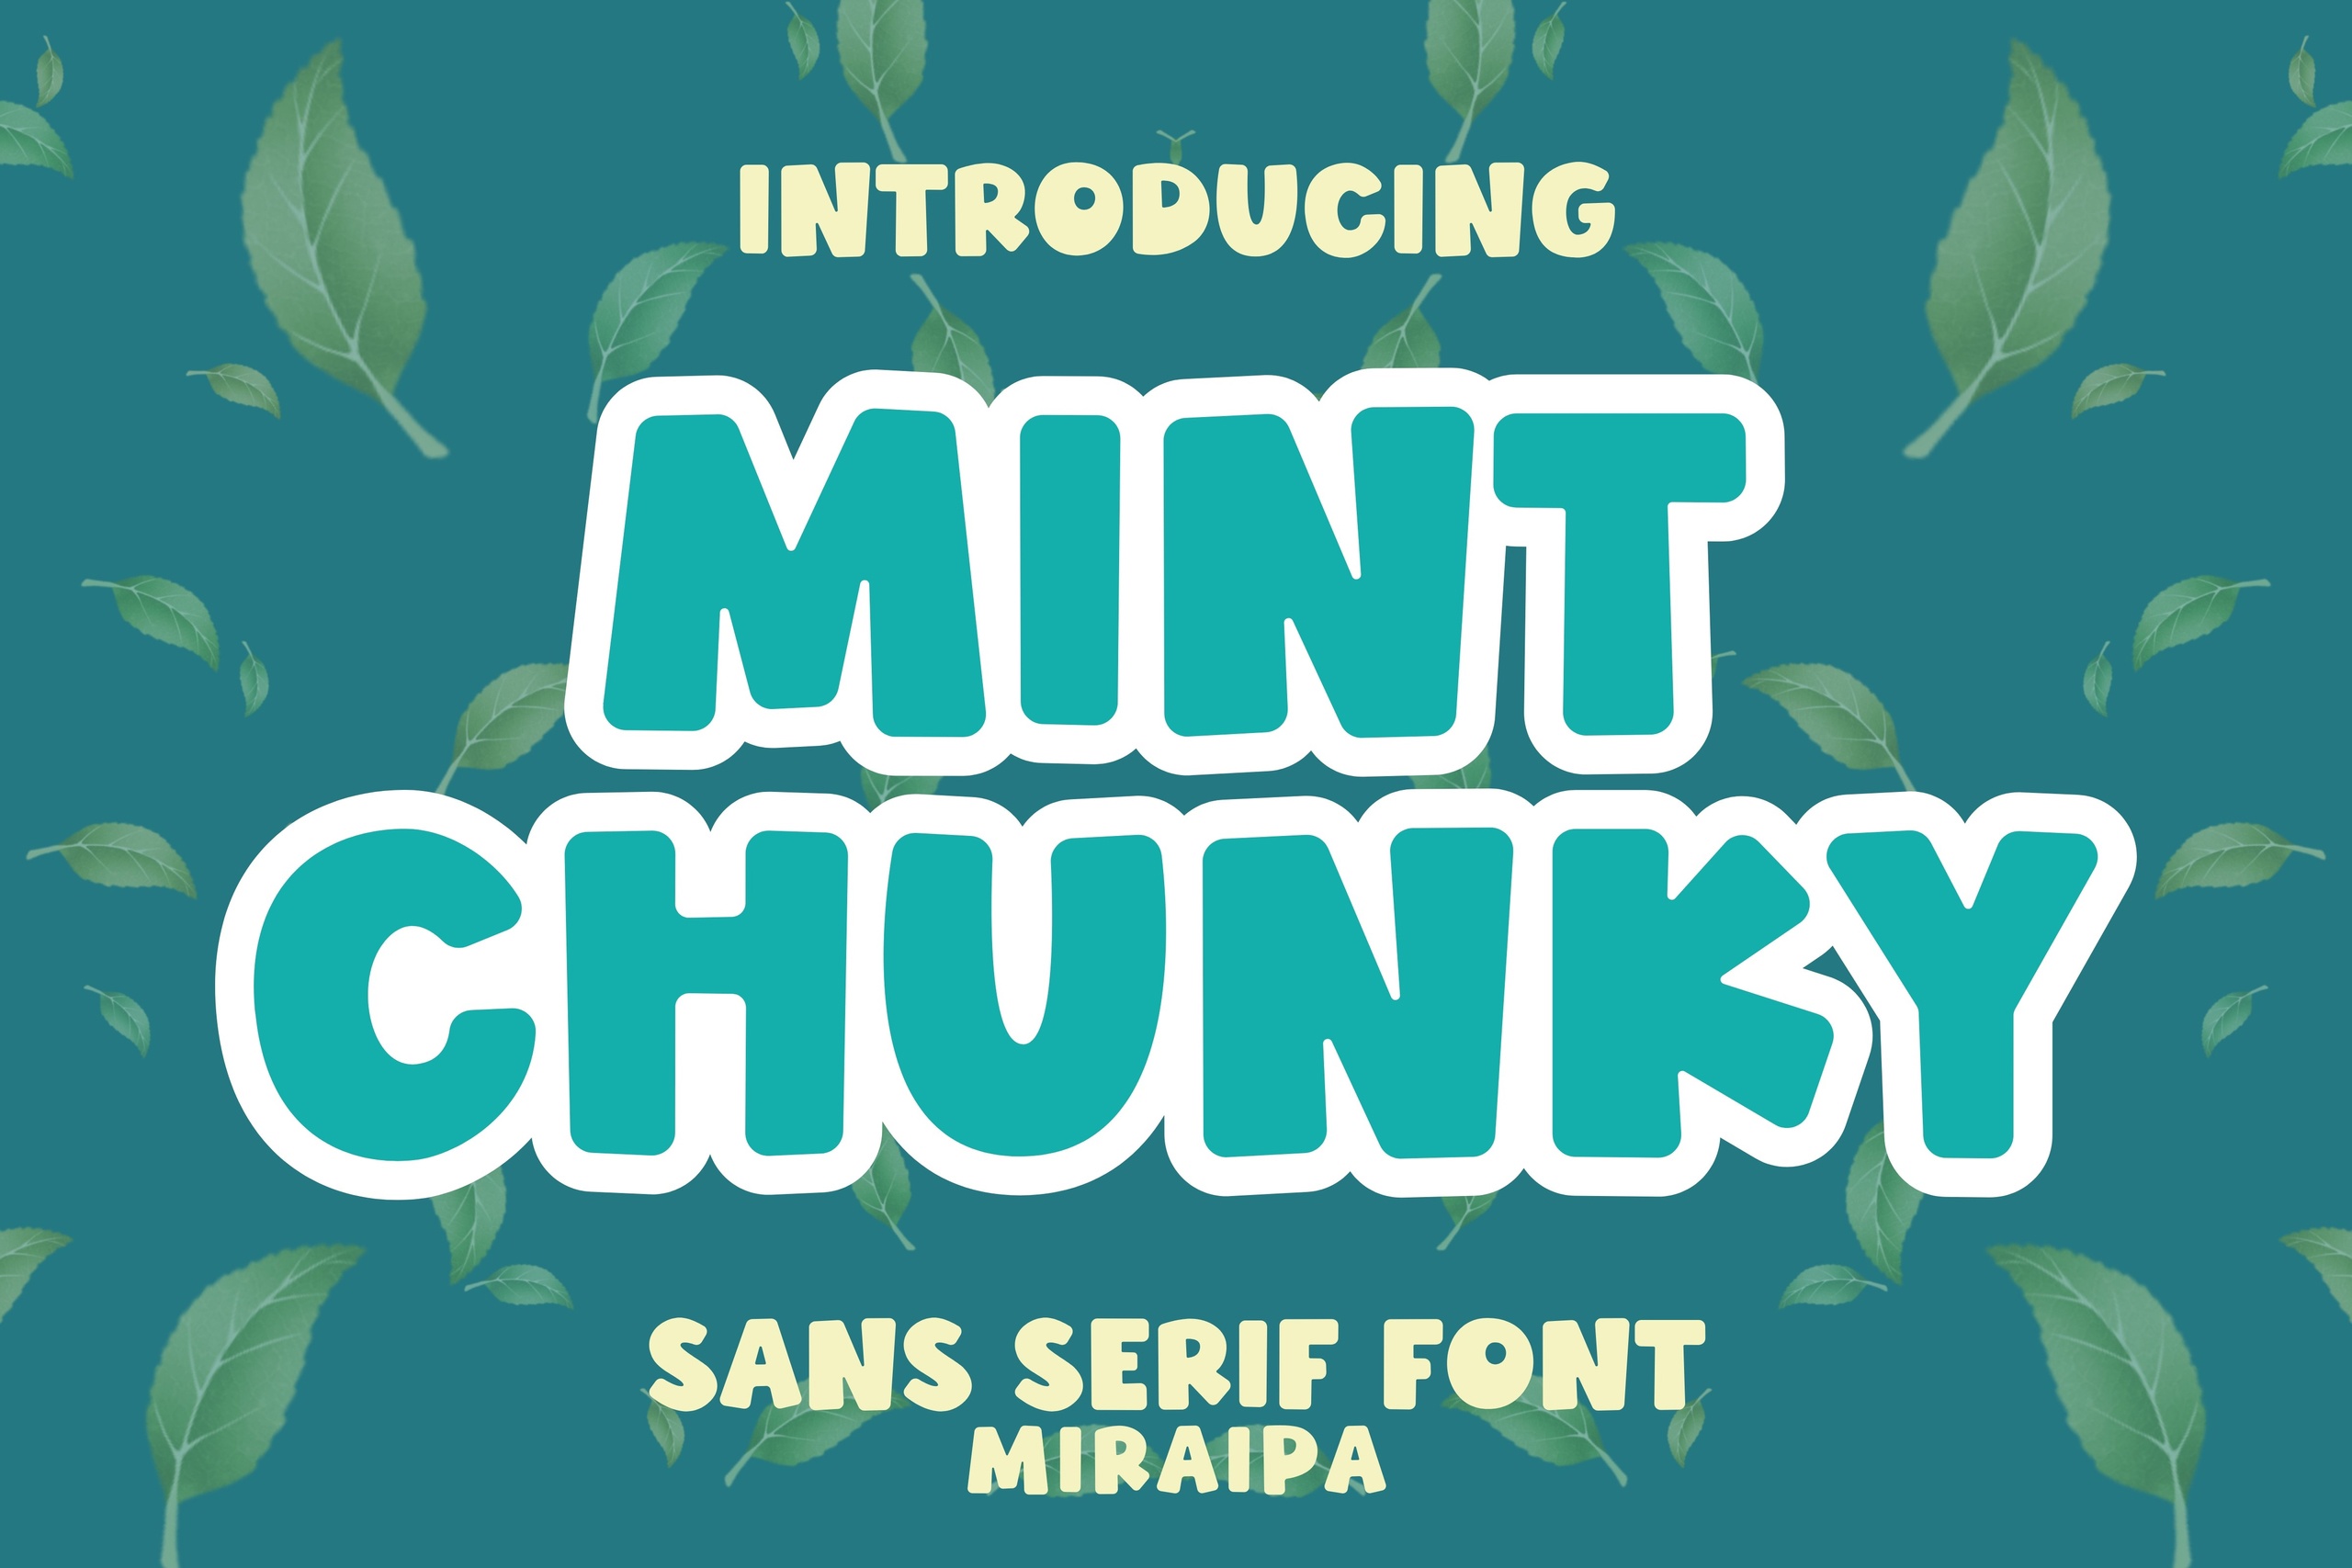 Beispiel einer Mint Chunky-Schriftart